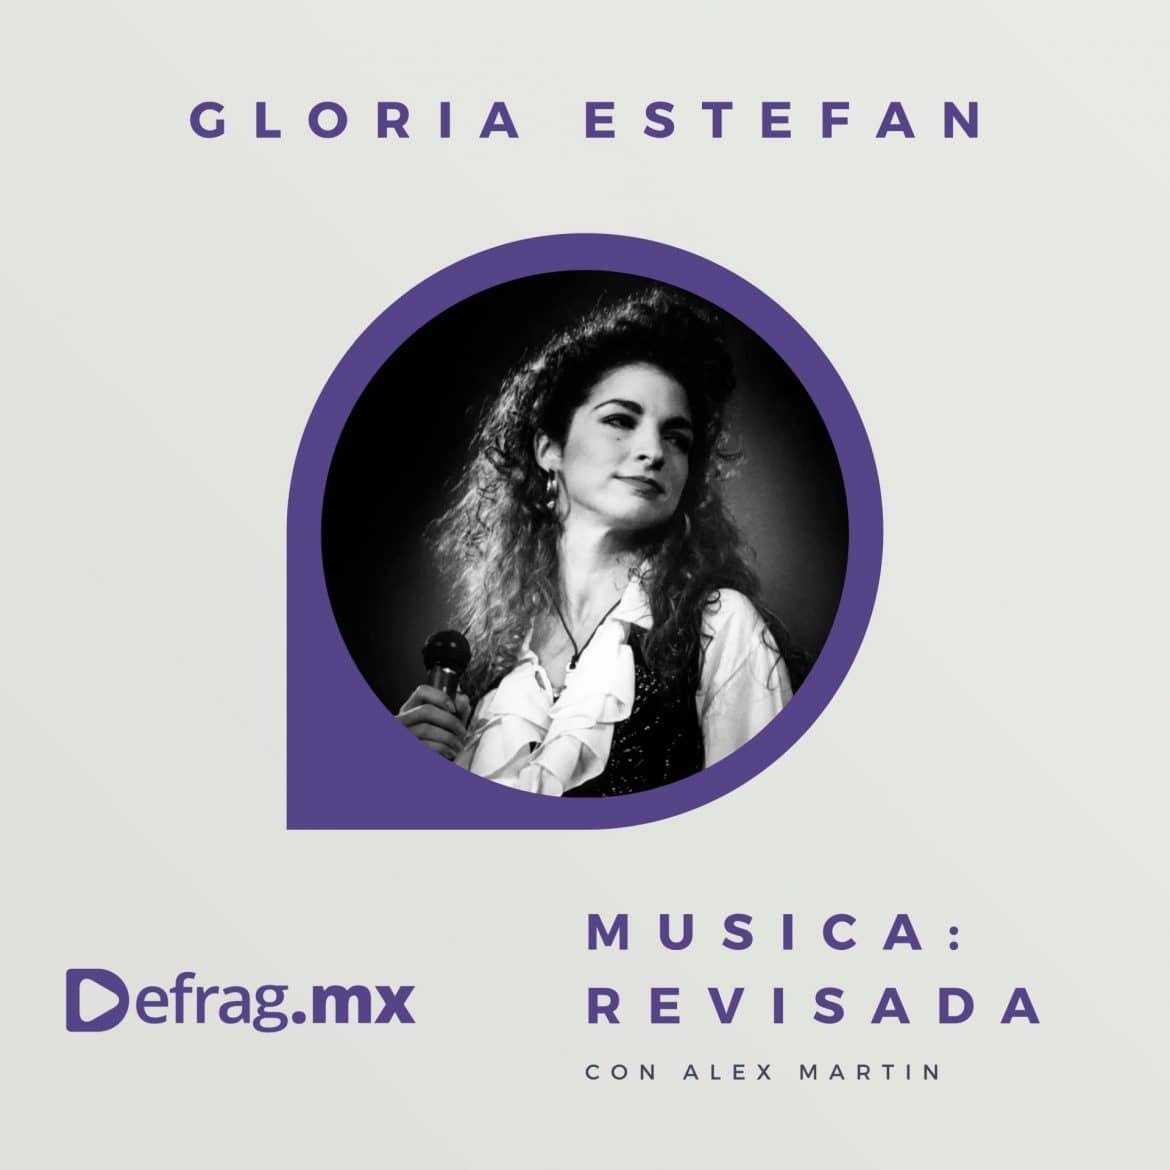 Defrag.mx Podcast Música Revisada Gloria Estefan Cuts Both Ways